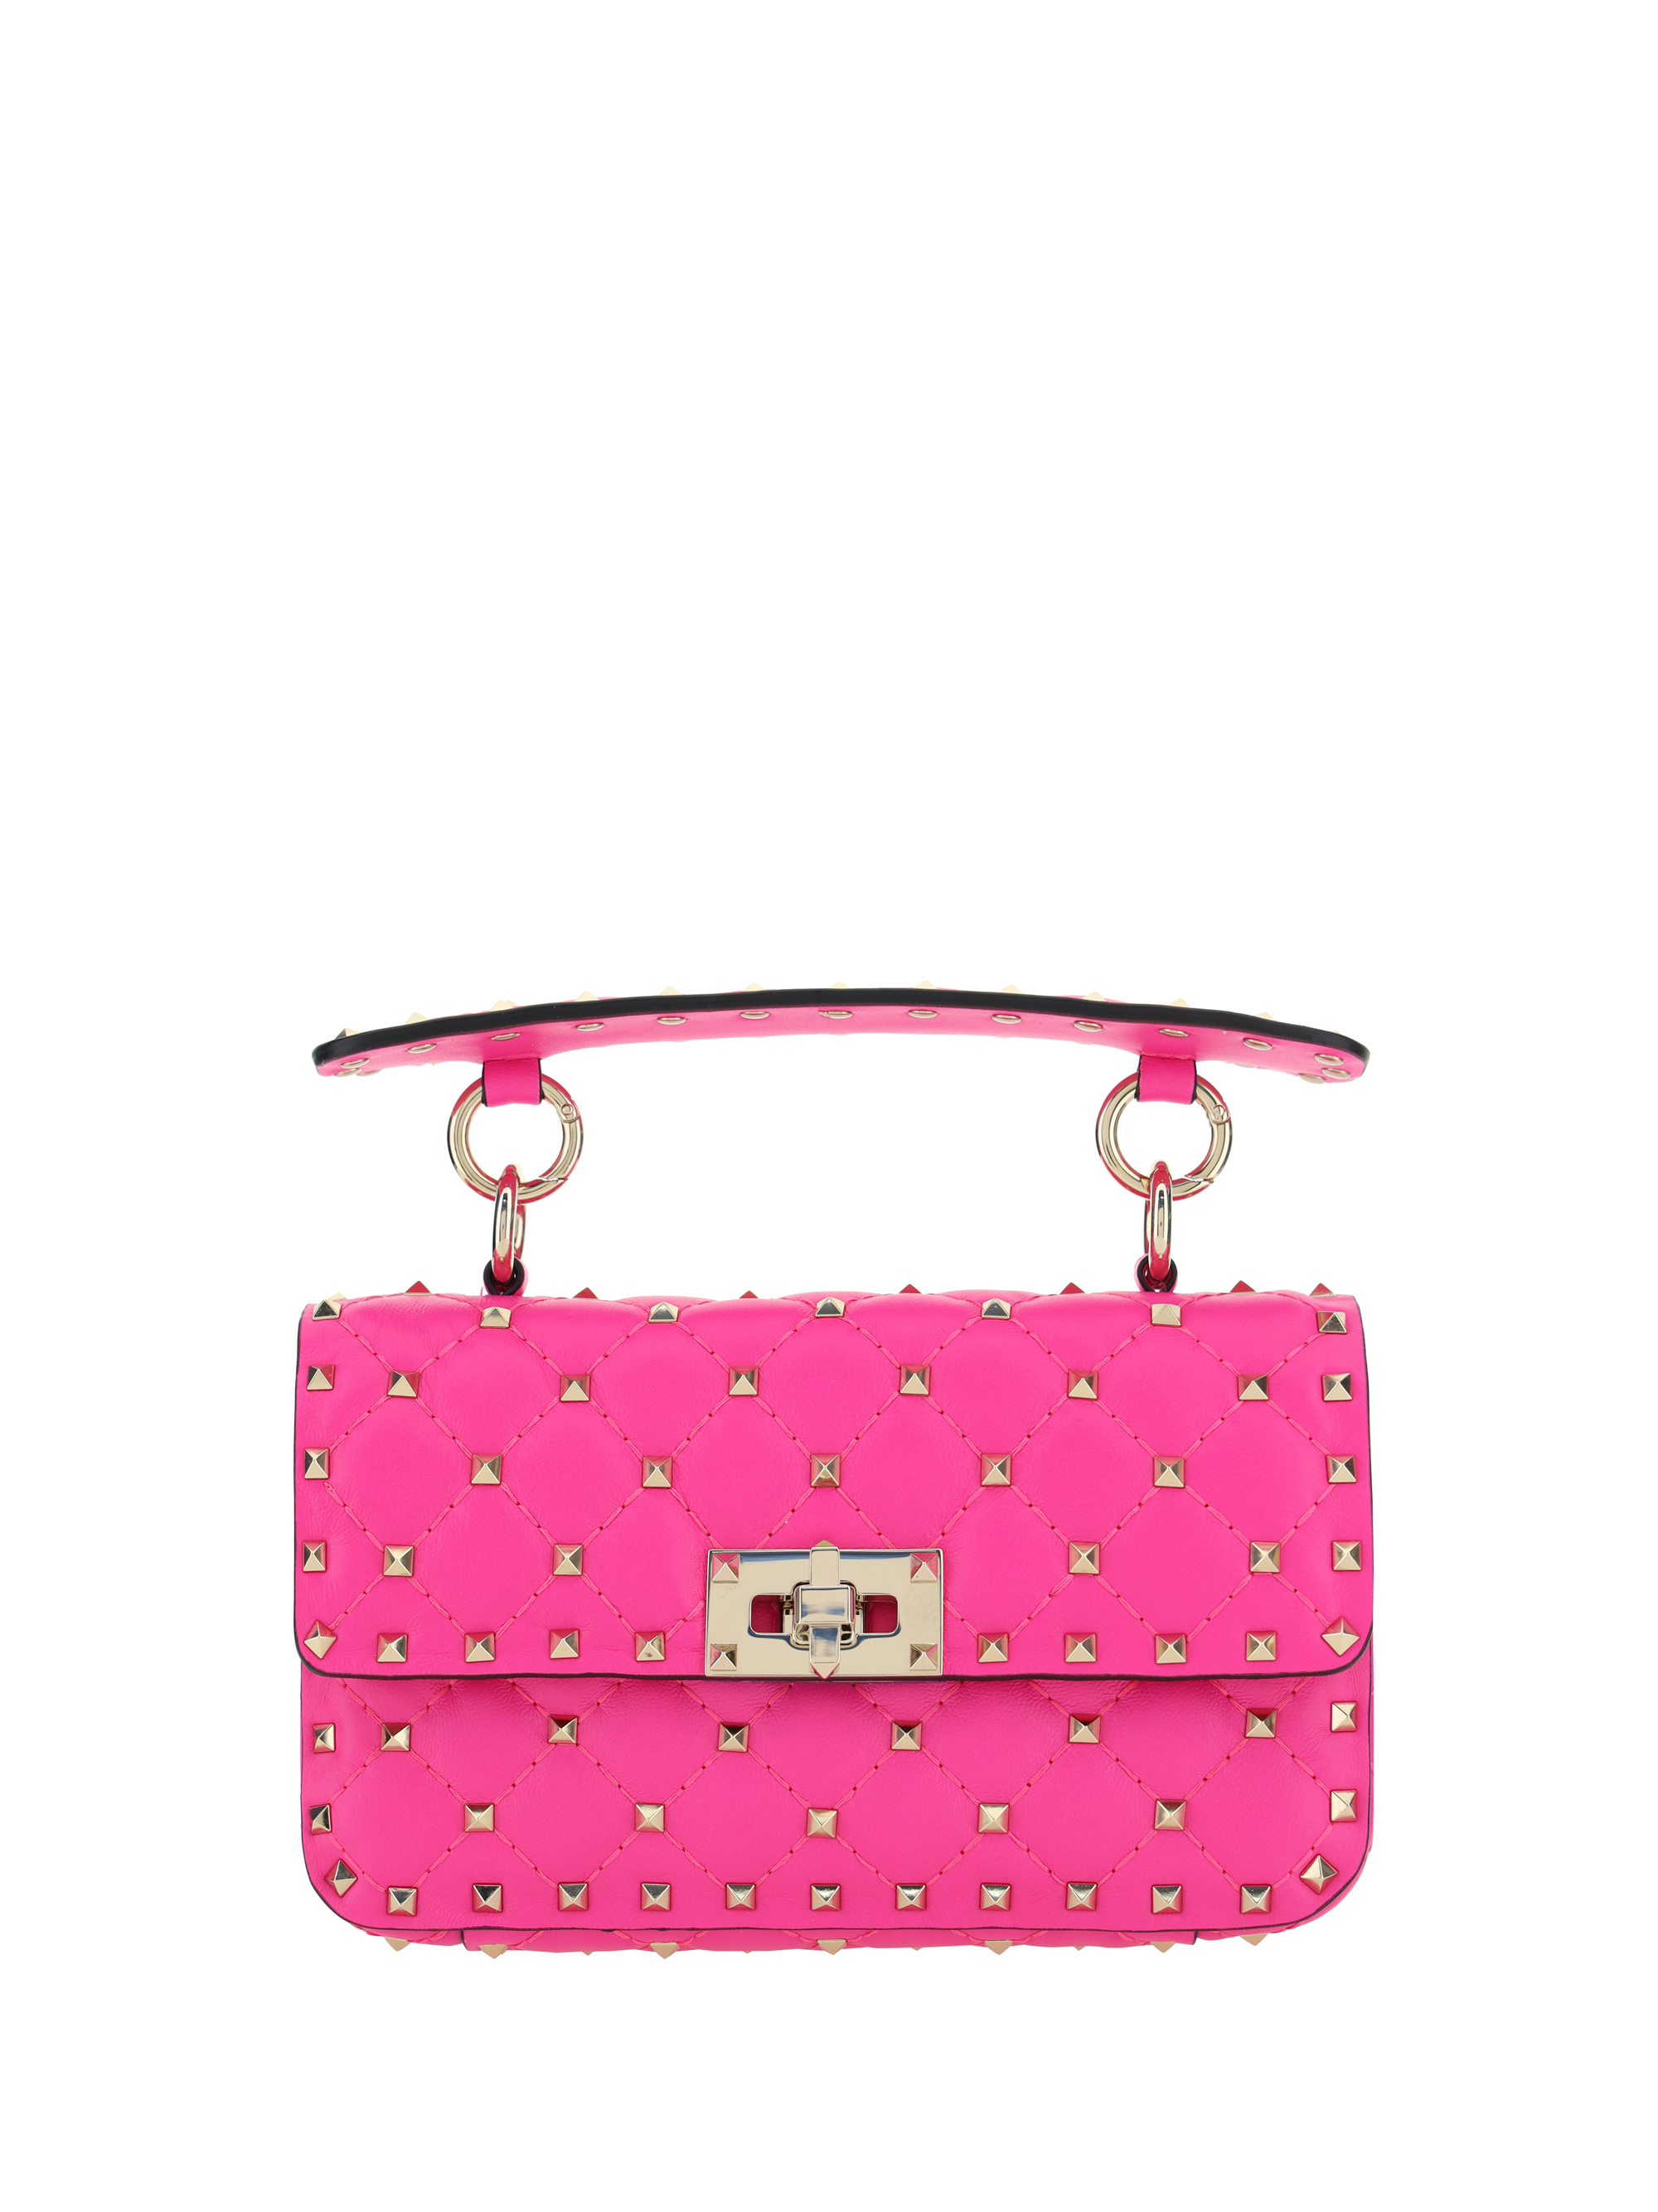 Valentino Garavani Rockstud Spike Handbag In Pink Pp